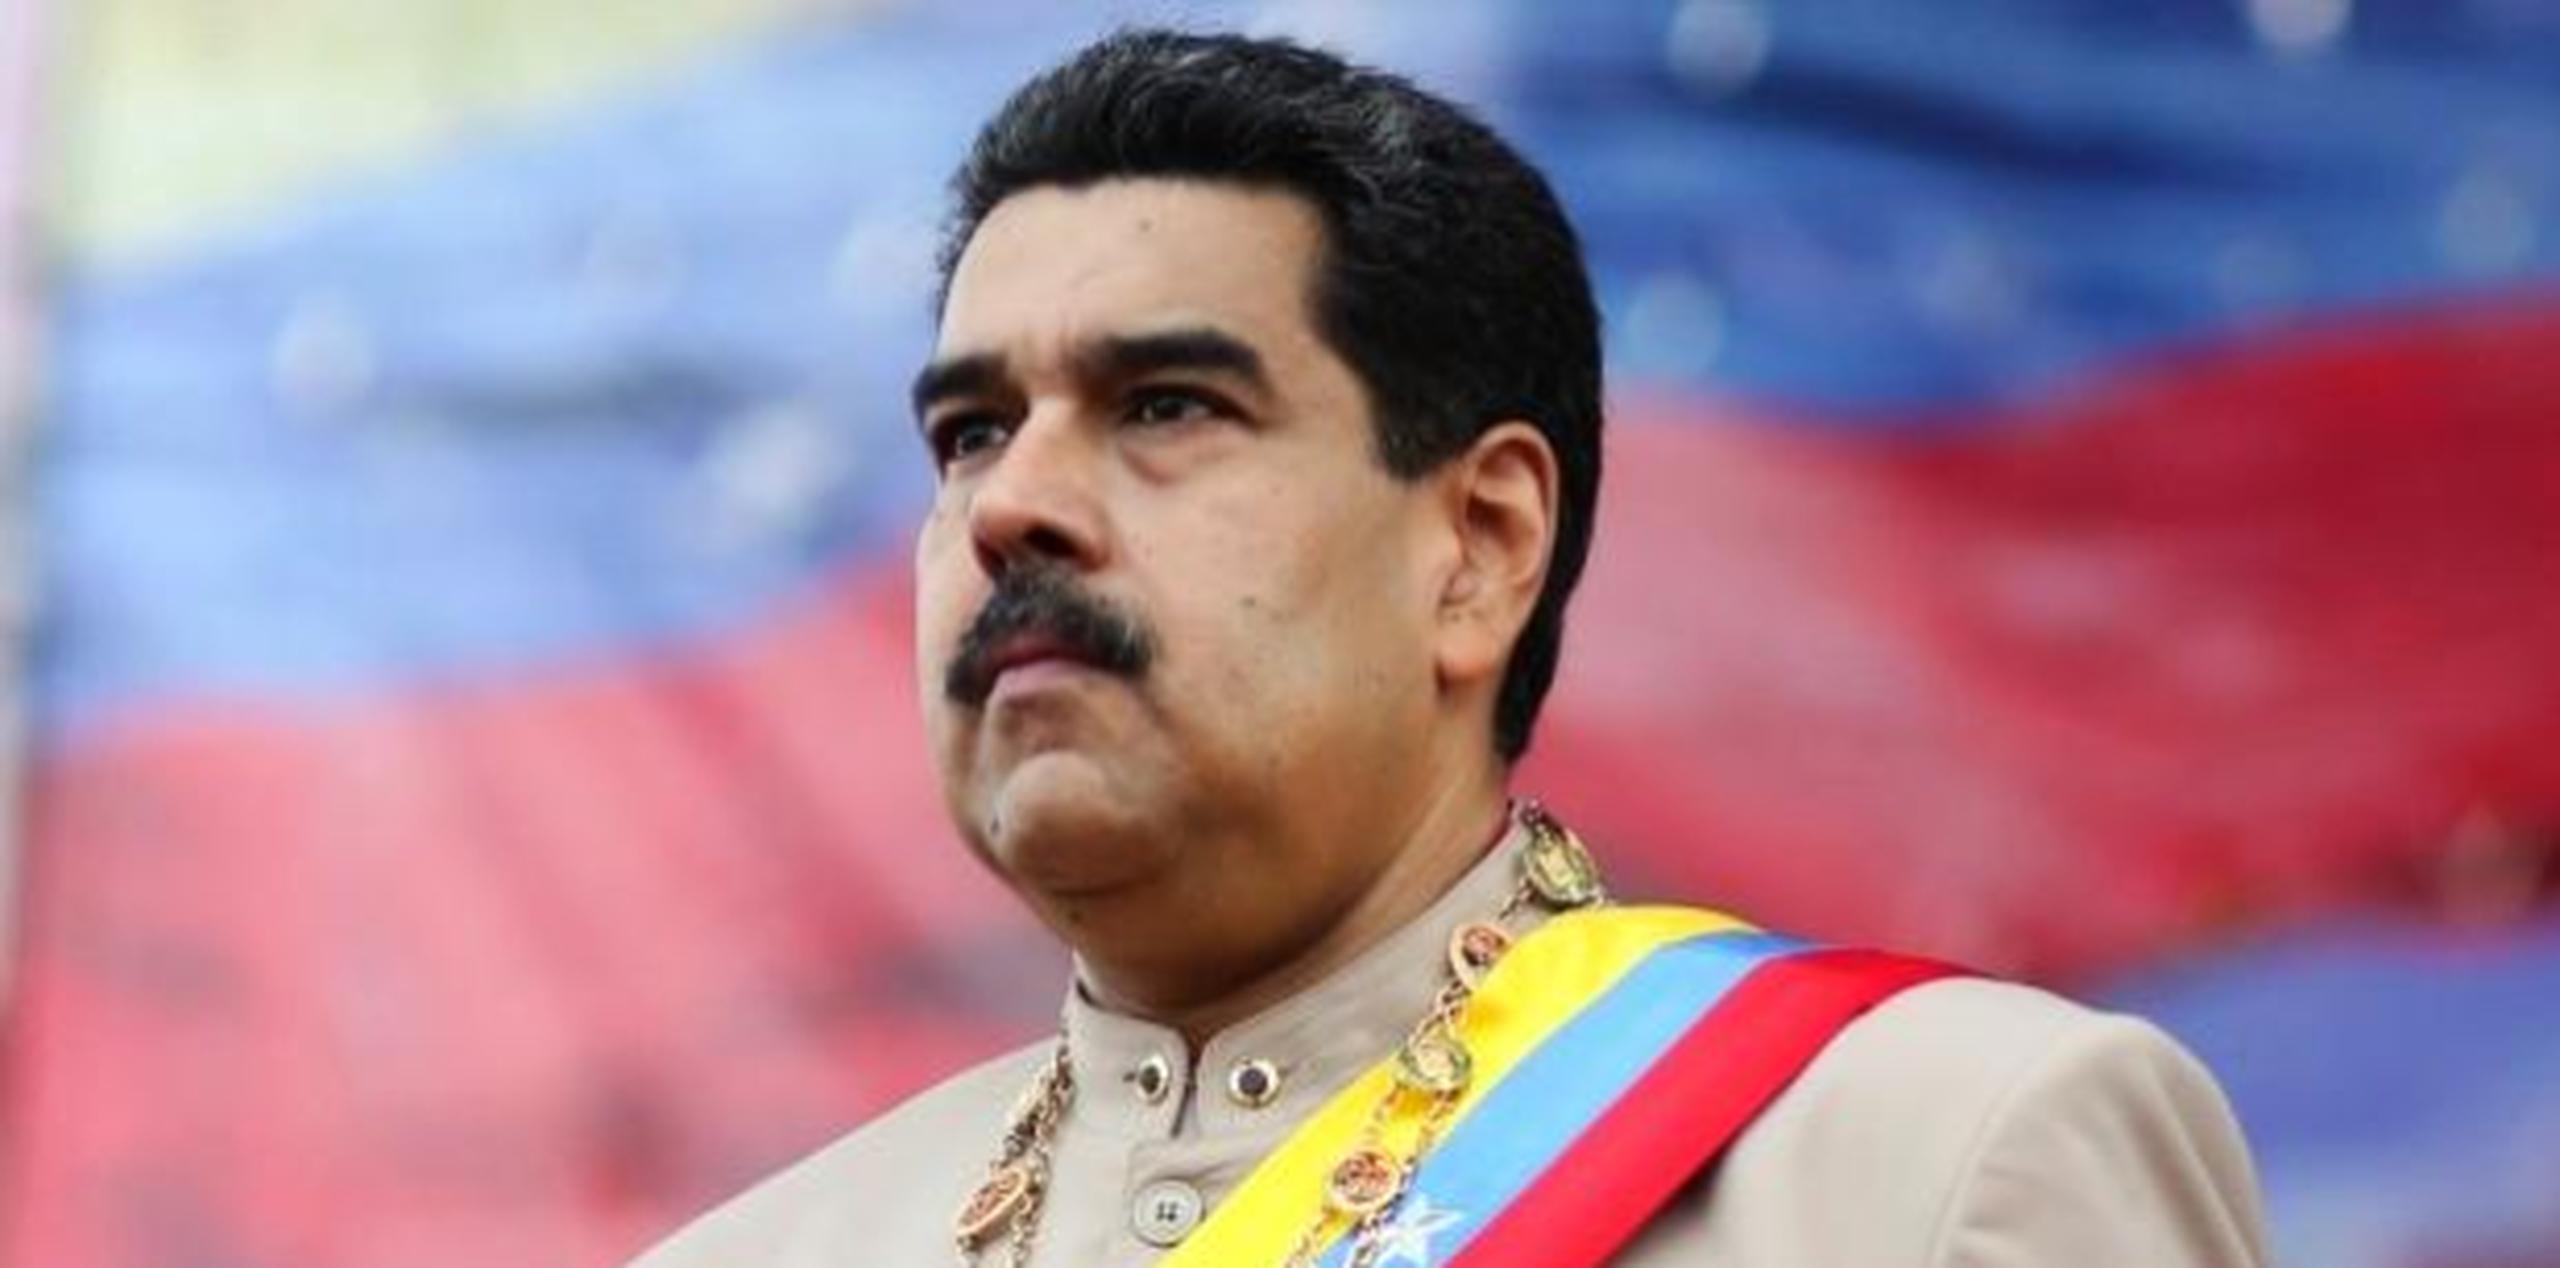 Nicolás Maduro, presidente de Venezuela. (GDA)